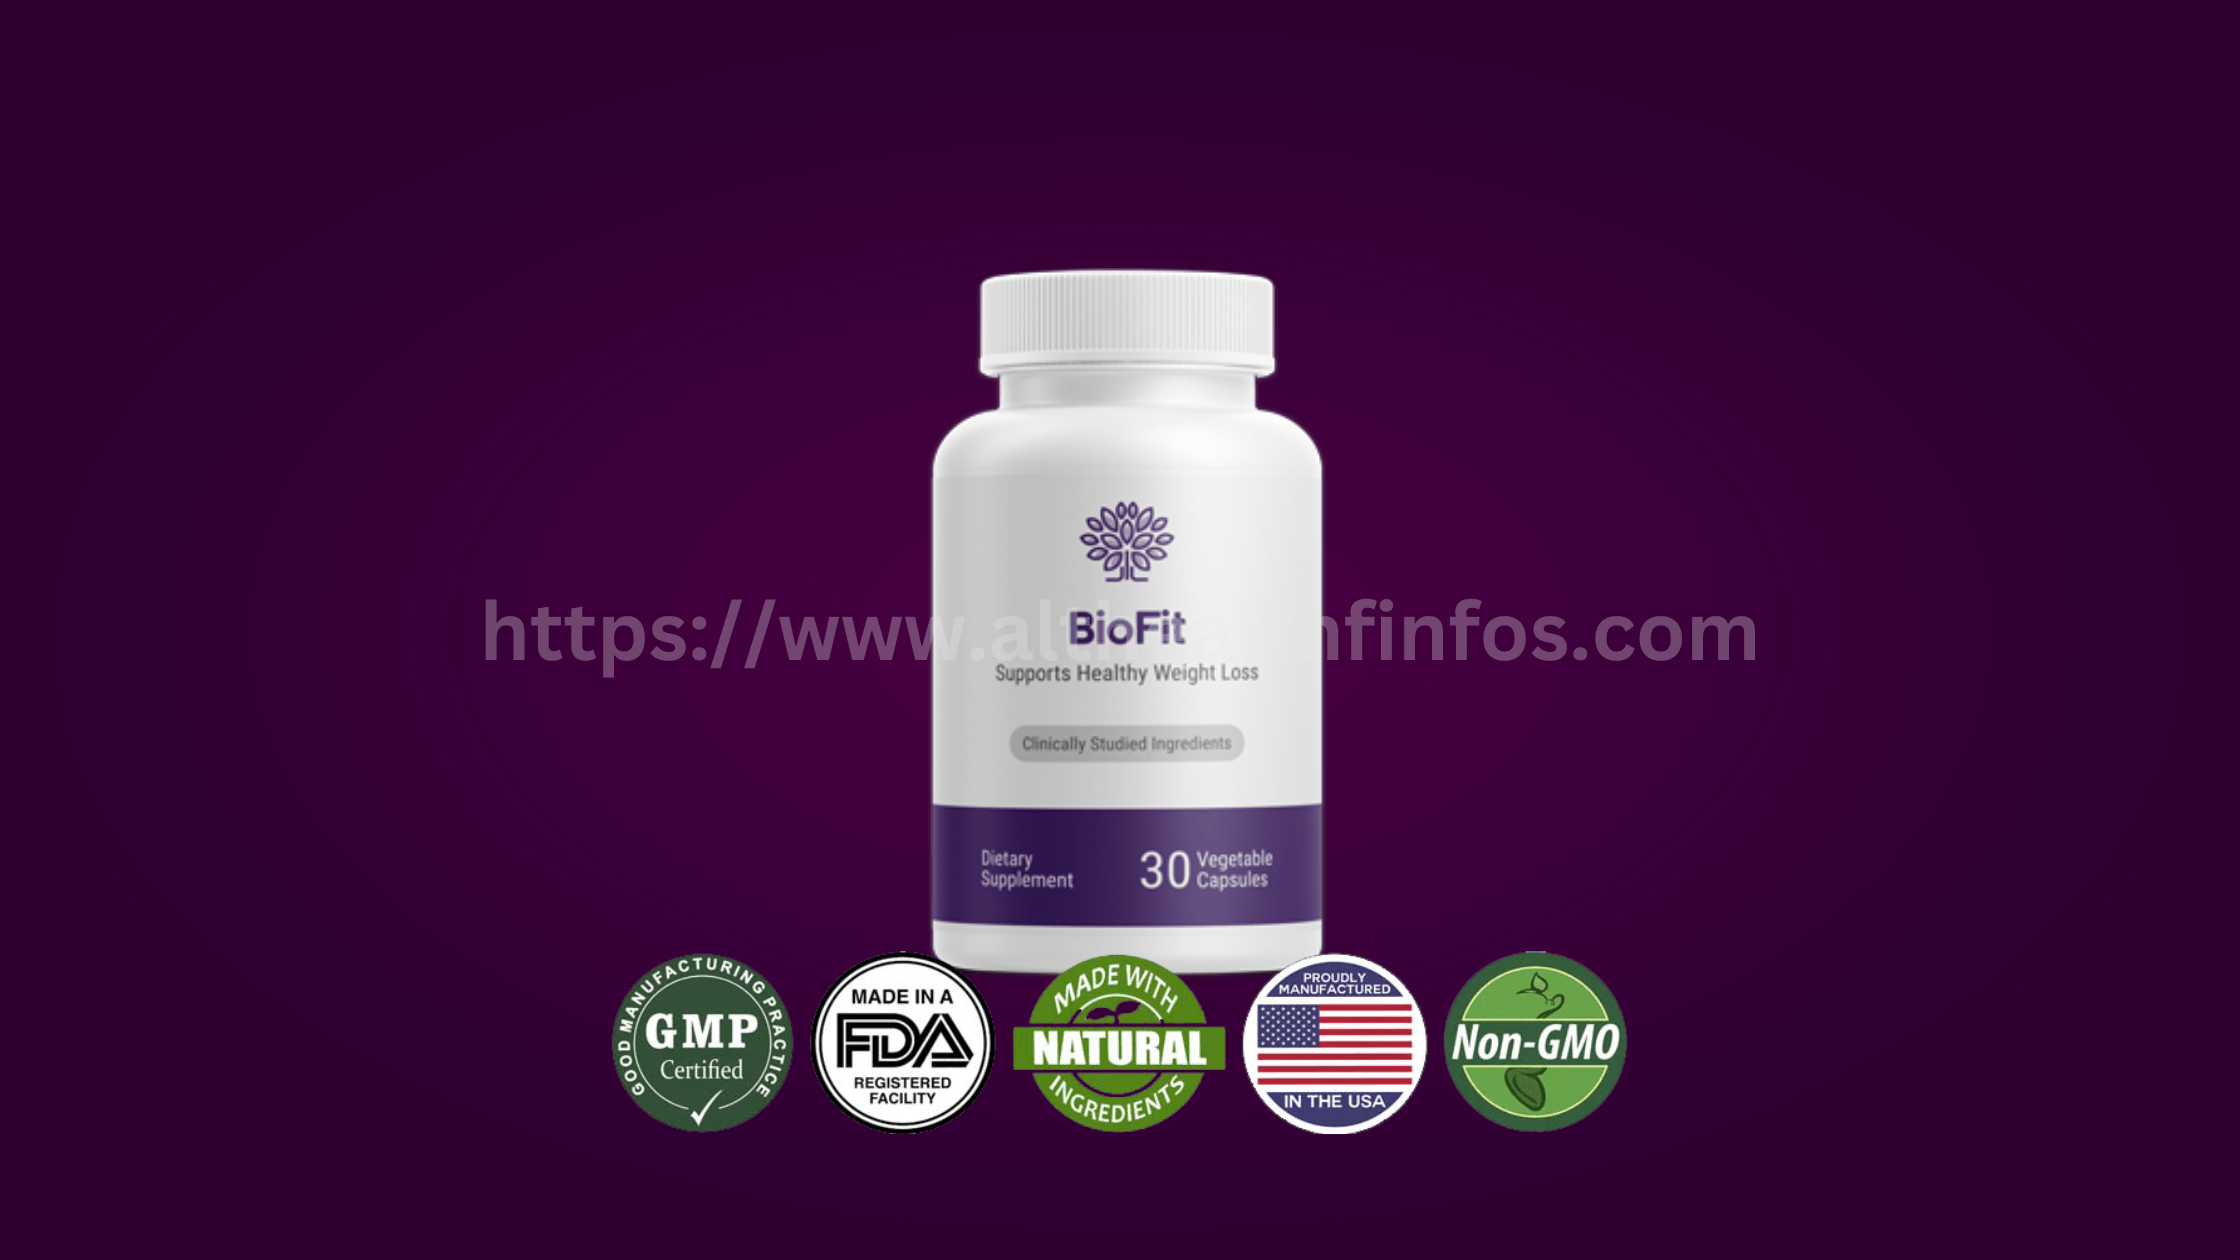 BioFit Supplement Reviews